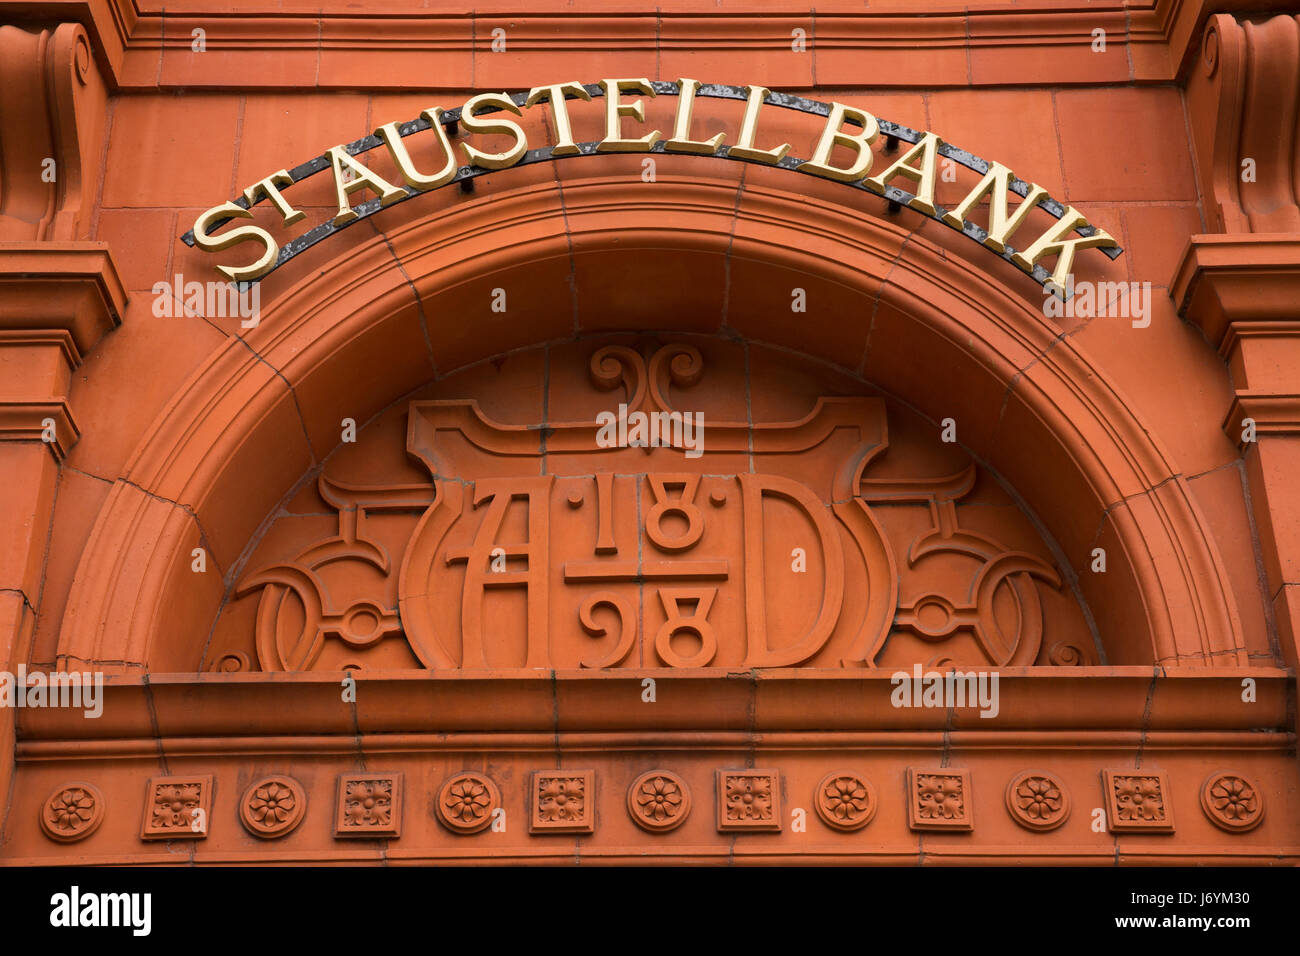 Großbritannien, Cornwall, St Austell, hohe Cross Street, terracotta1898 St Austell Bank unterzeichnen auf Nat West Bank Stockfoto